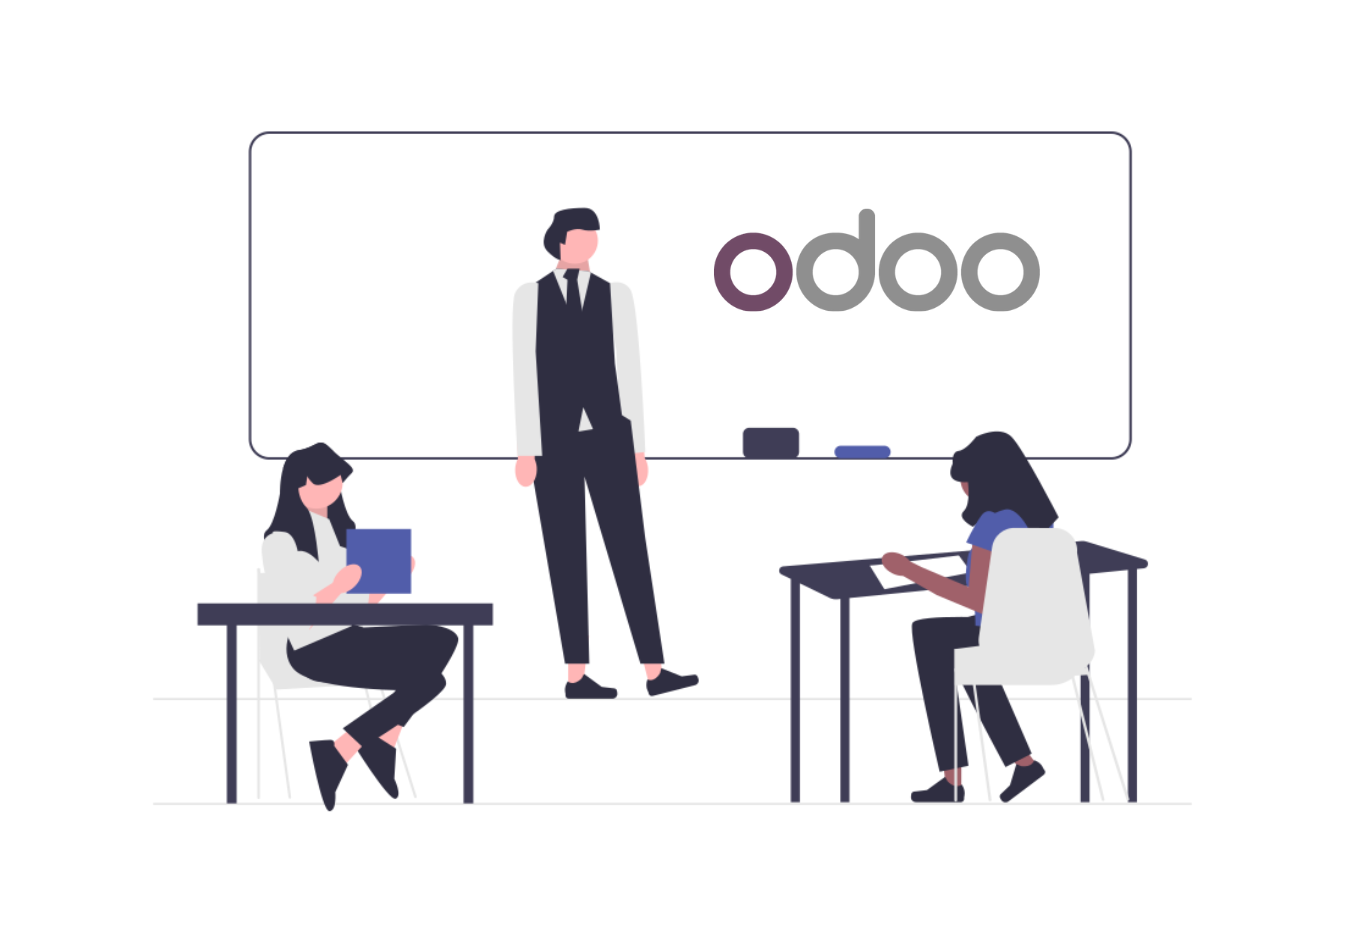 บริการจัดอบรมสอนการใช้งาน Odoo ERP ทั้งด้าน Functional และด้าน Technical โดยทีมที่ได้รับ Odoo Certification